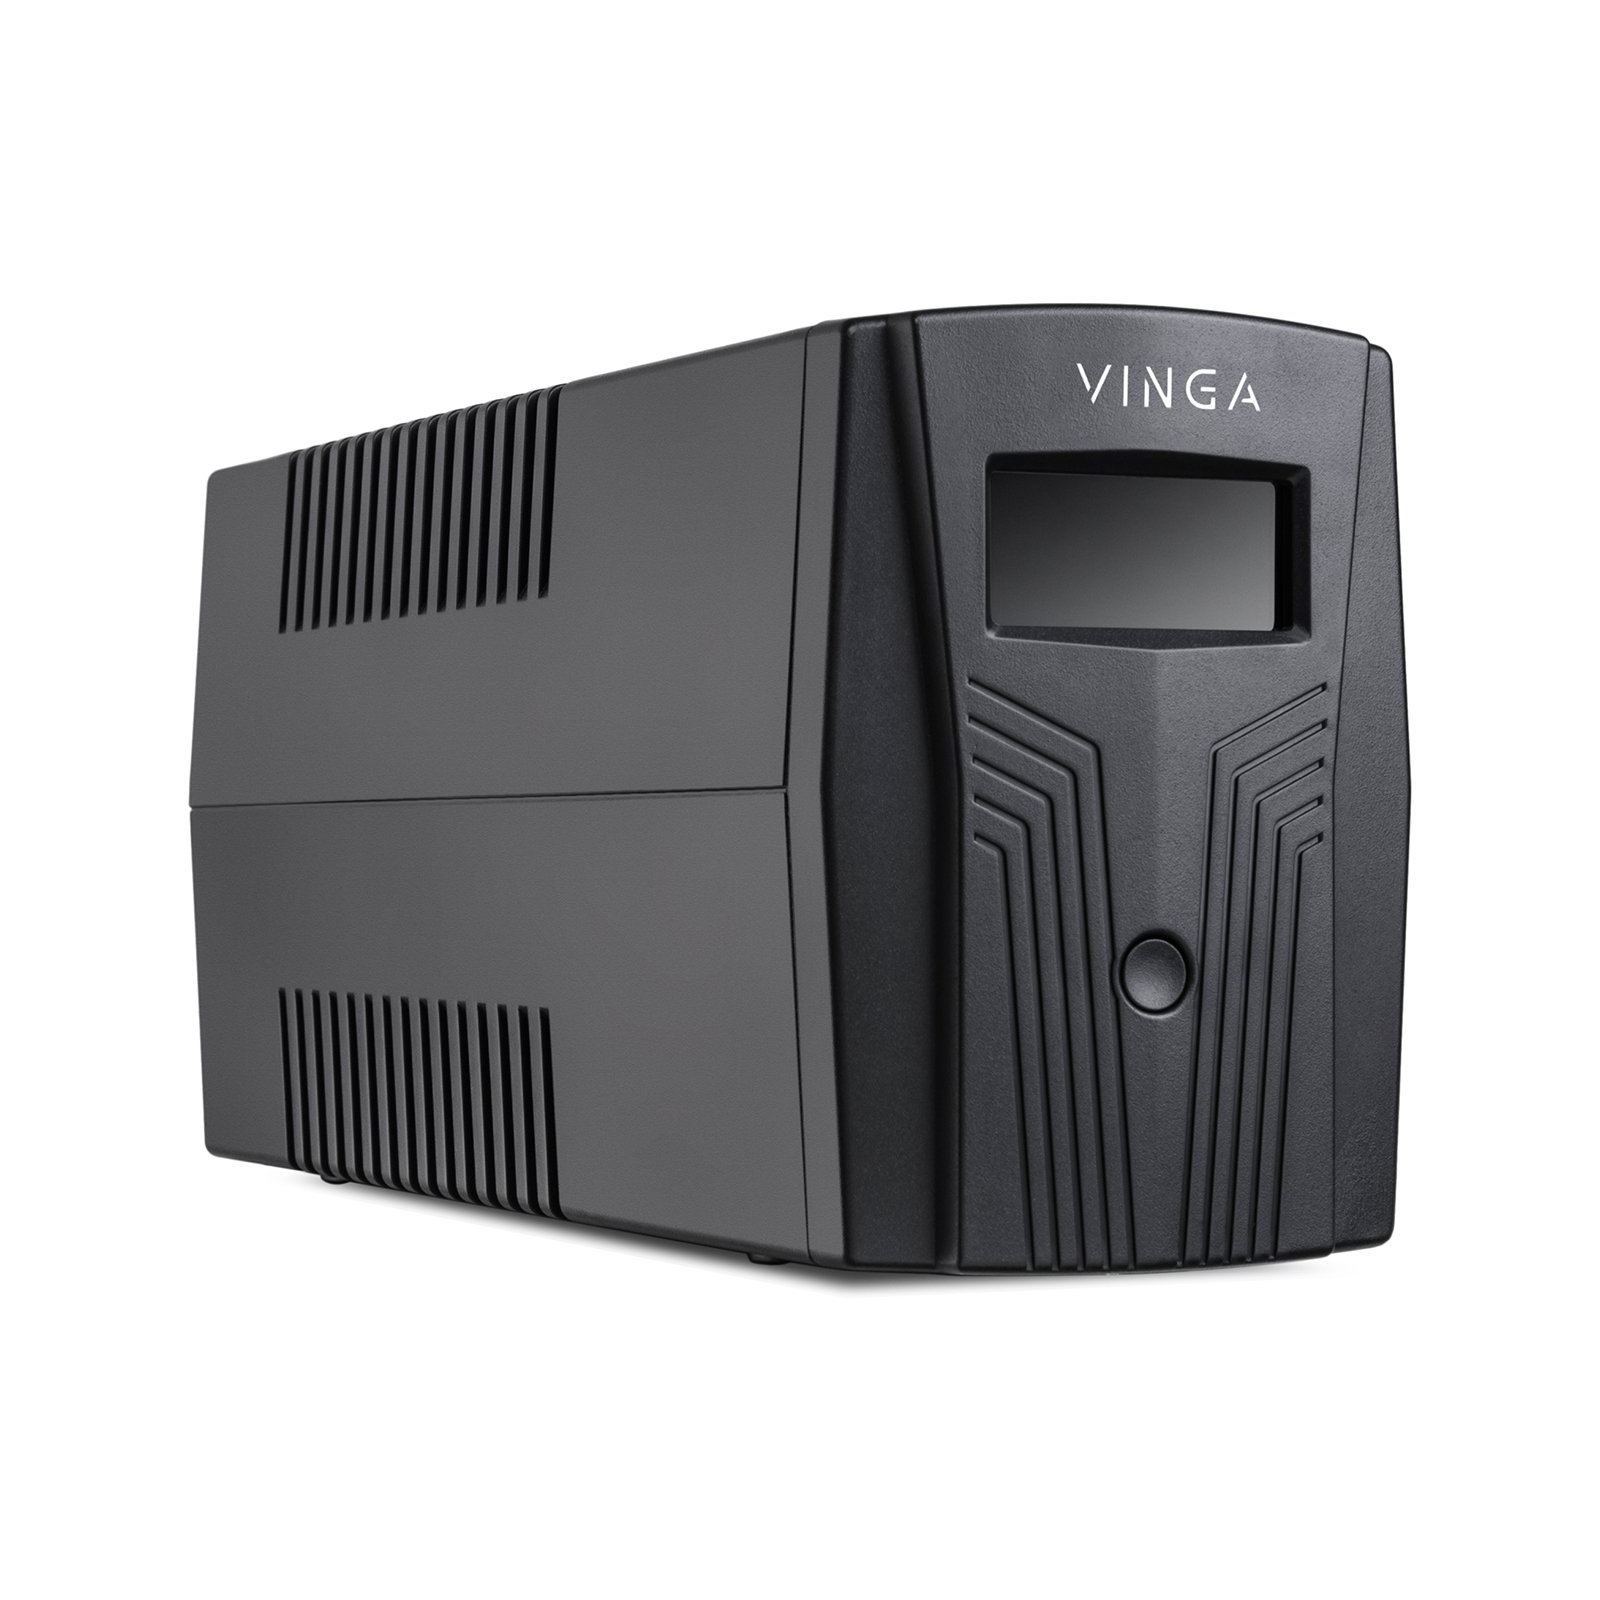 Источник бесперебойного питания Vinga LCD 600VA plastic case (VPC-600P) изображение 5